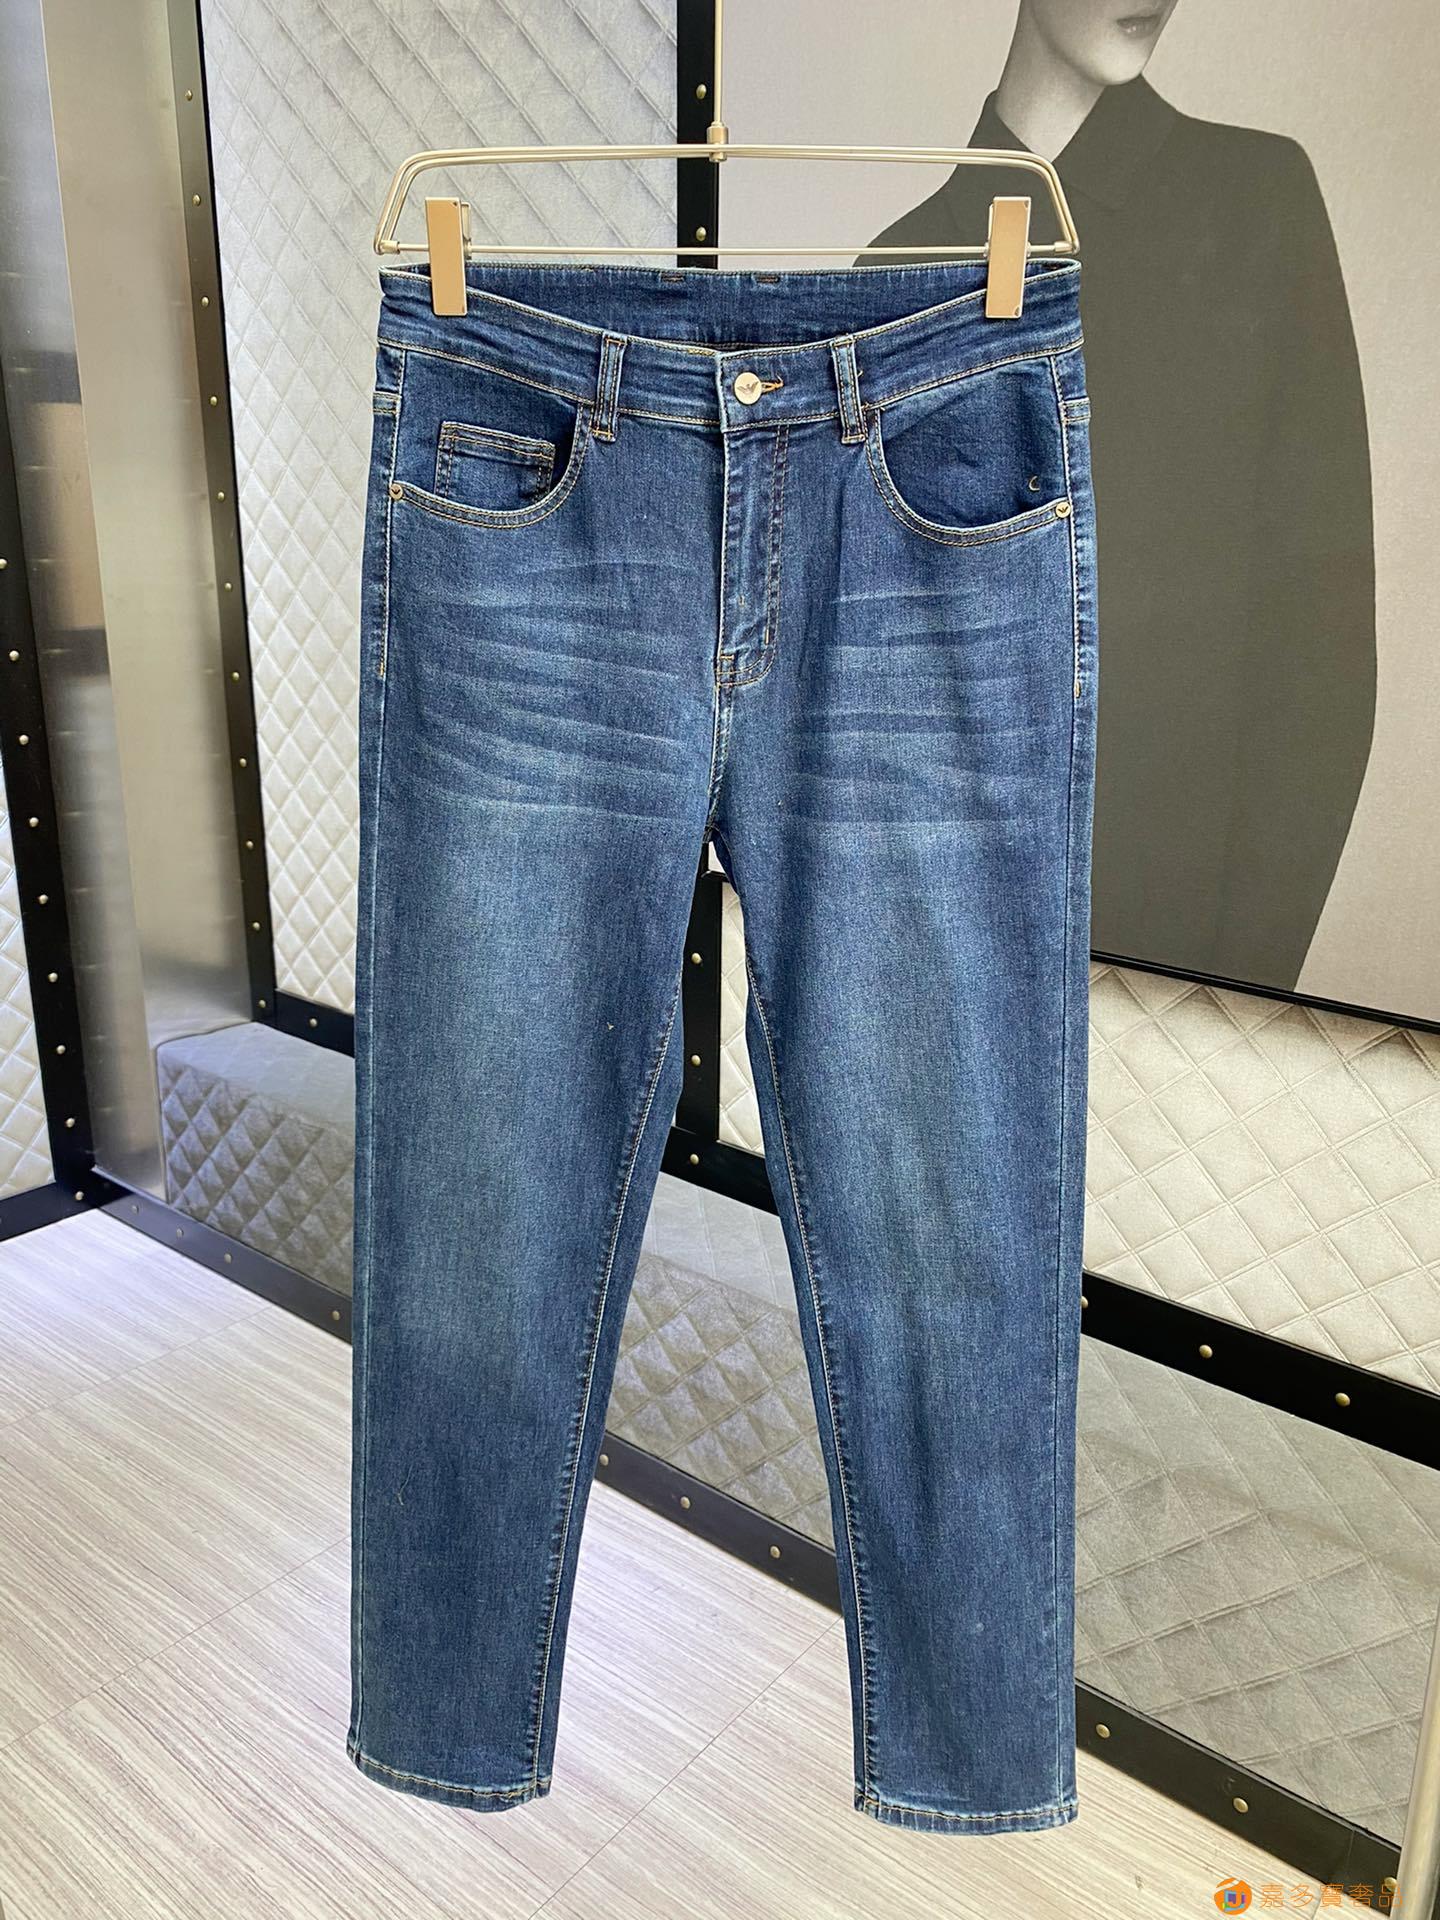 阿玛尼:官网最新款男士牛仔裤!重磅全球珍藏款!买手届口碑爆棚